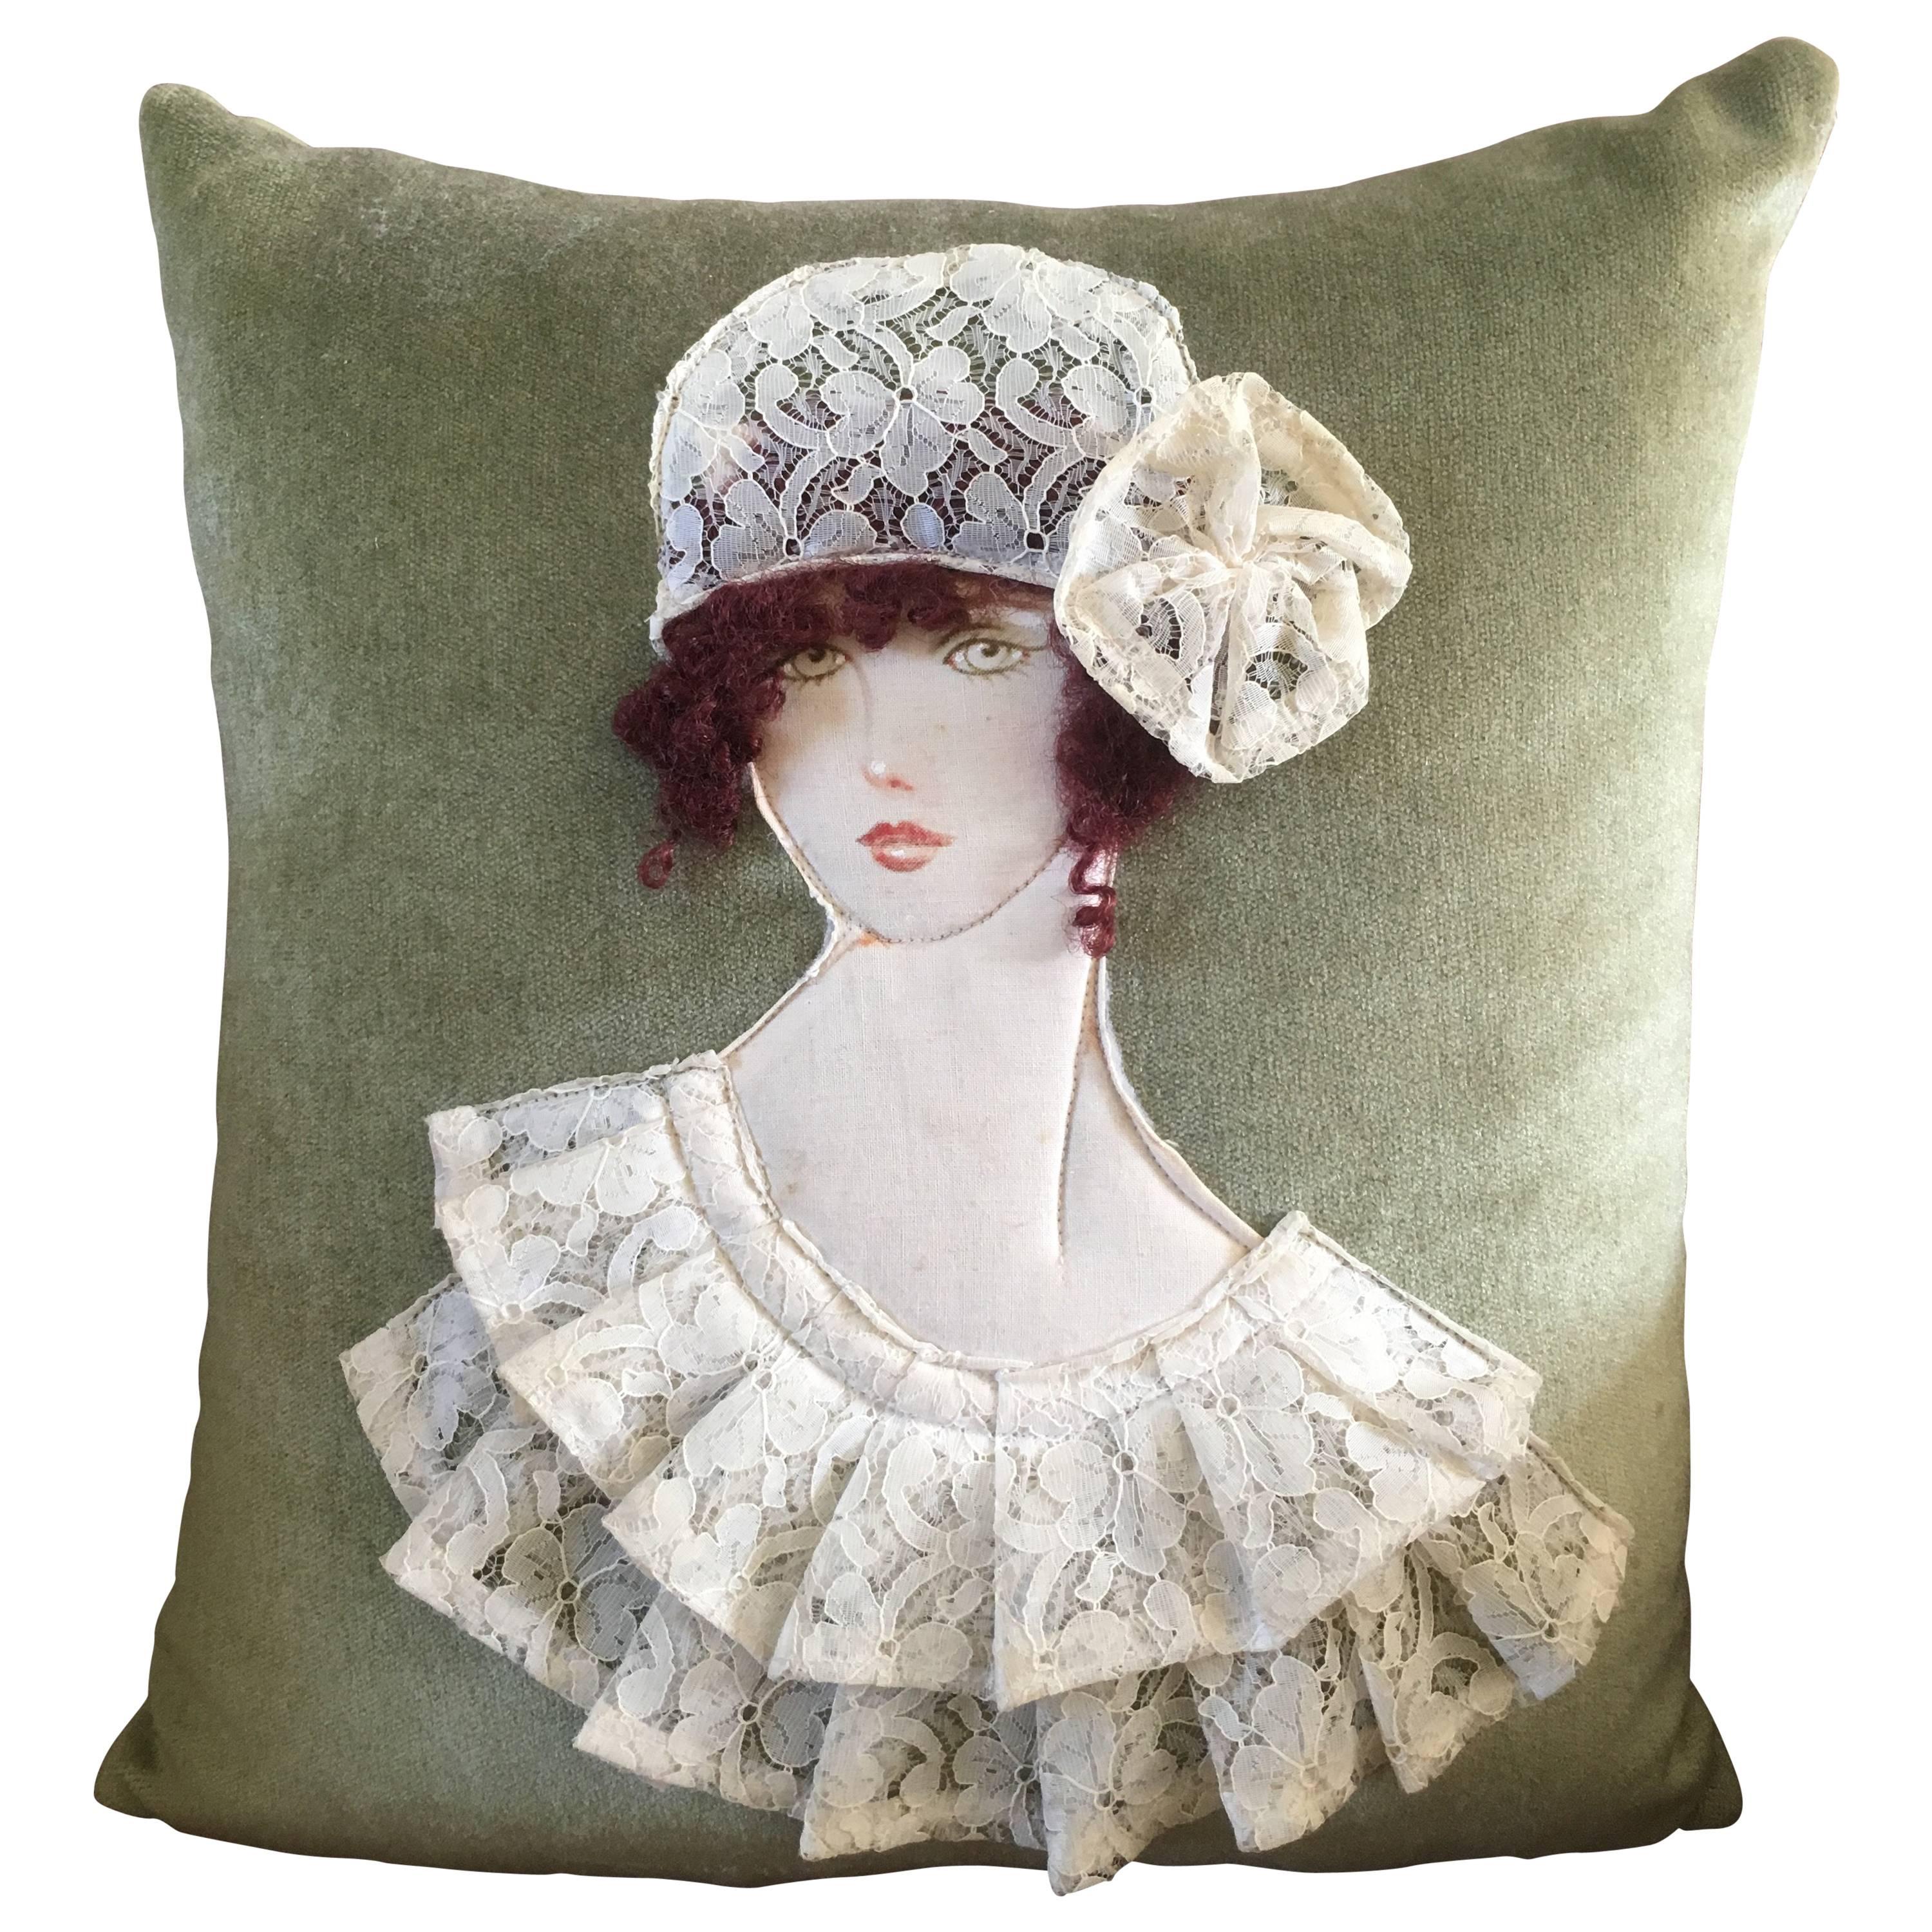 Art Deco French Handwoven Art Cushion Pillow, 1920s Woman Decor, Velvet Lace For Sale